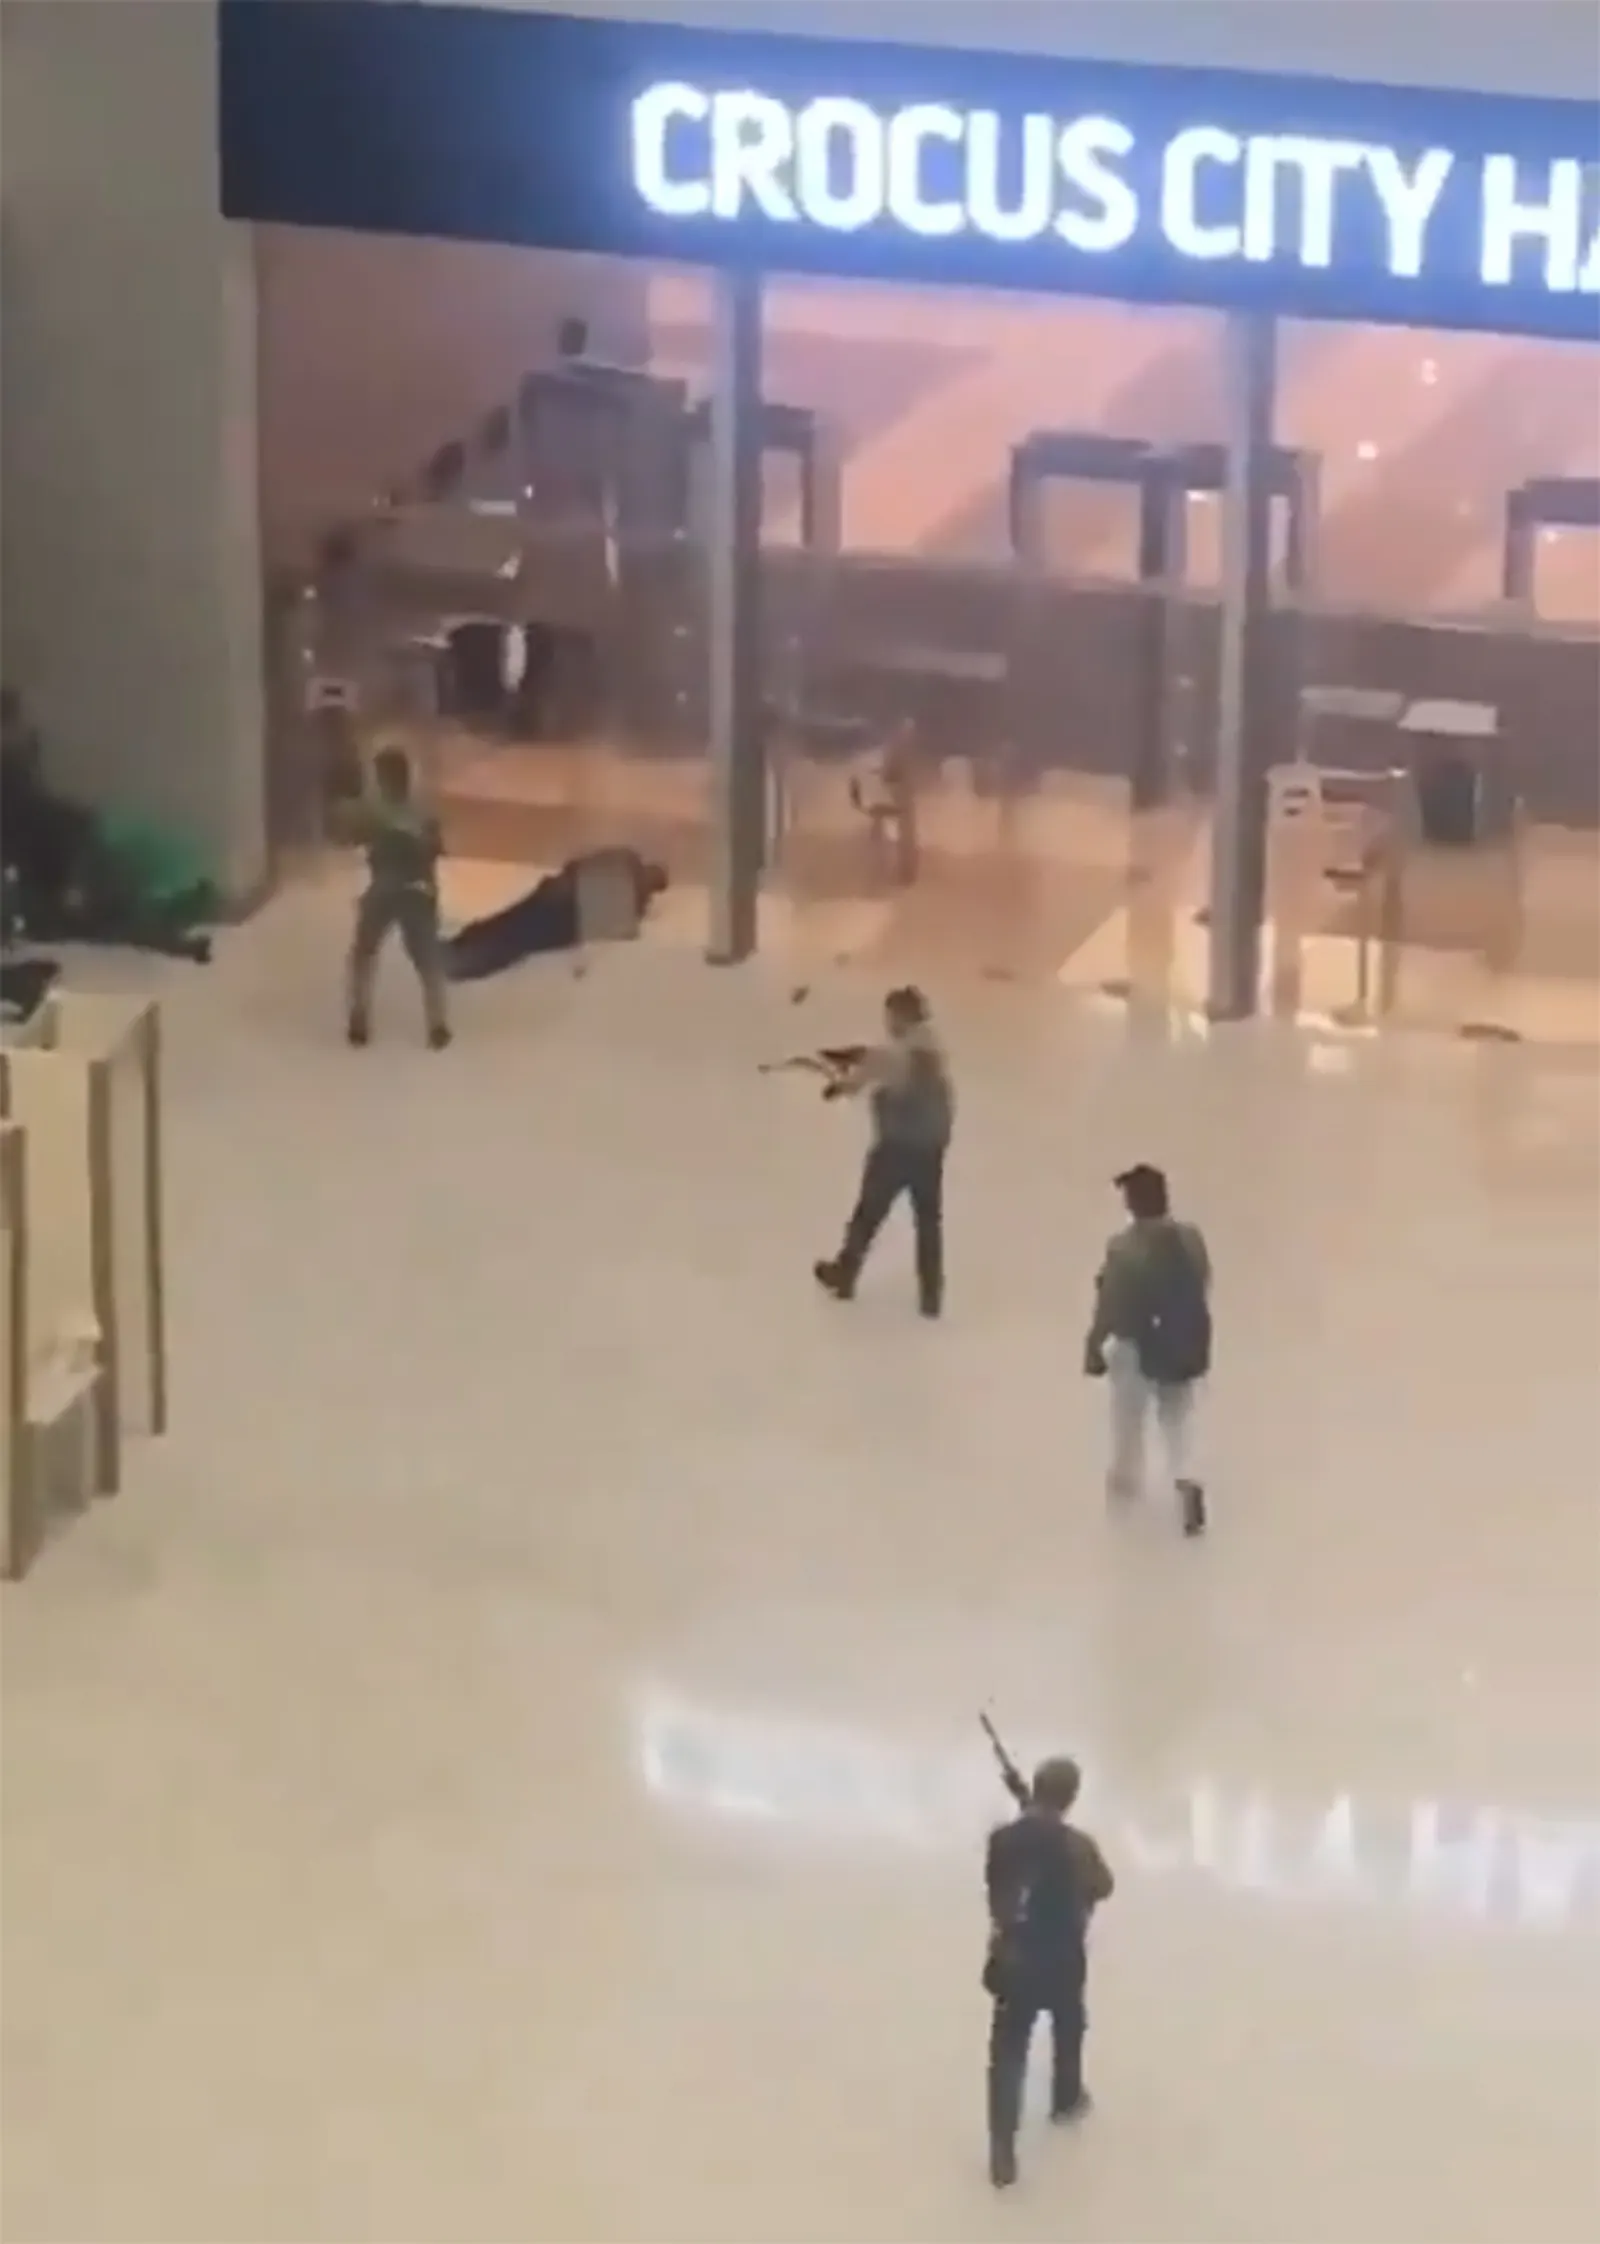 Screenshot eines Videos aus dem Crocus, das die Attentäter zeigt.